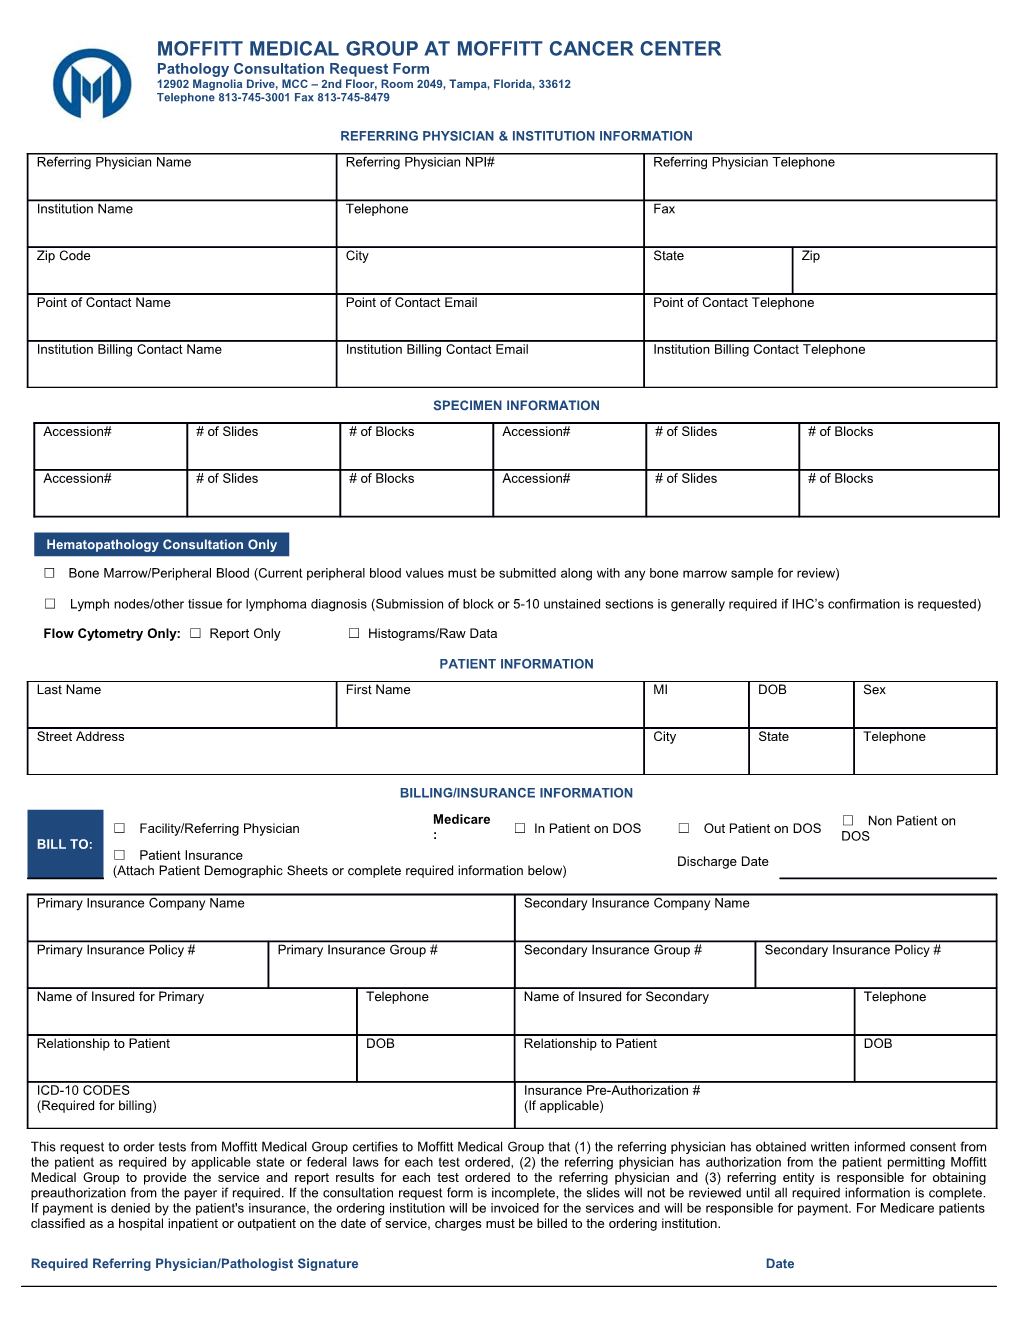 Pathology Consultation Request Form